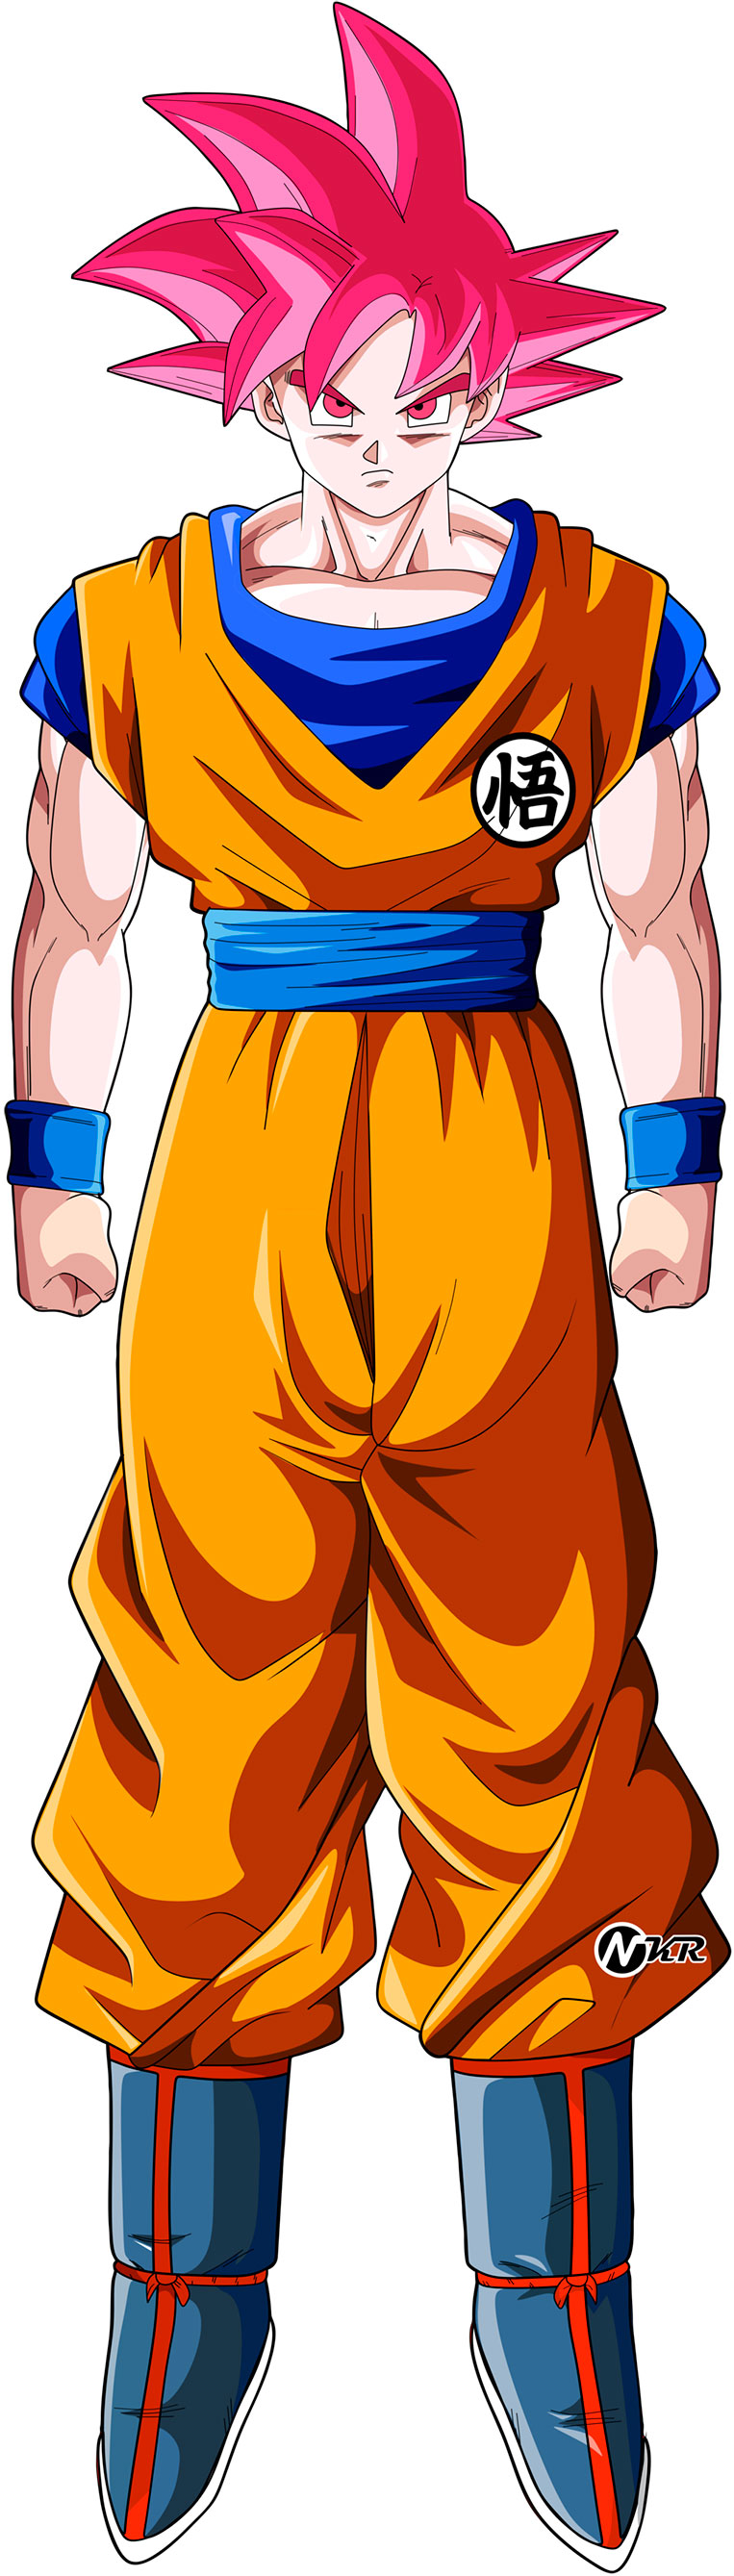 Goku super saiyajin god